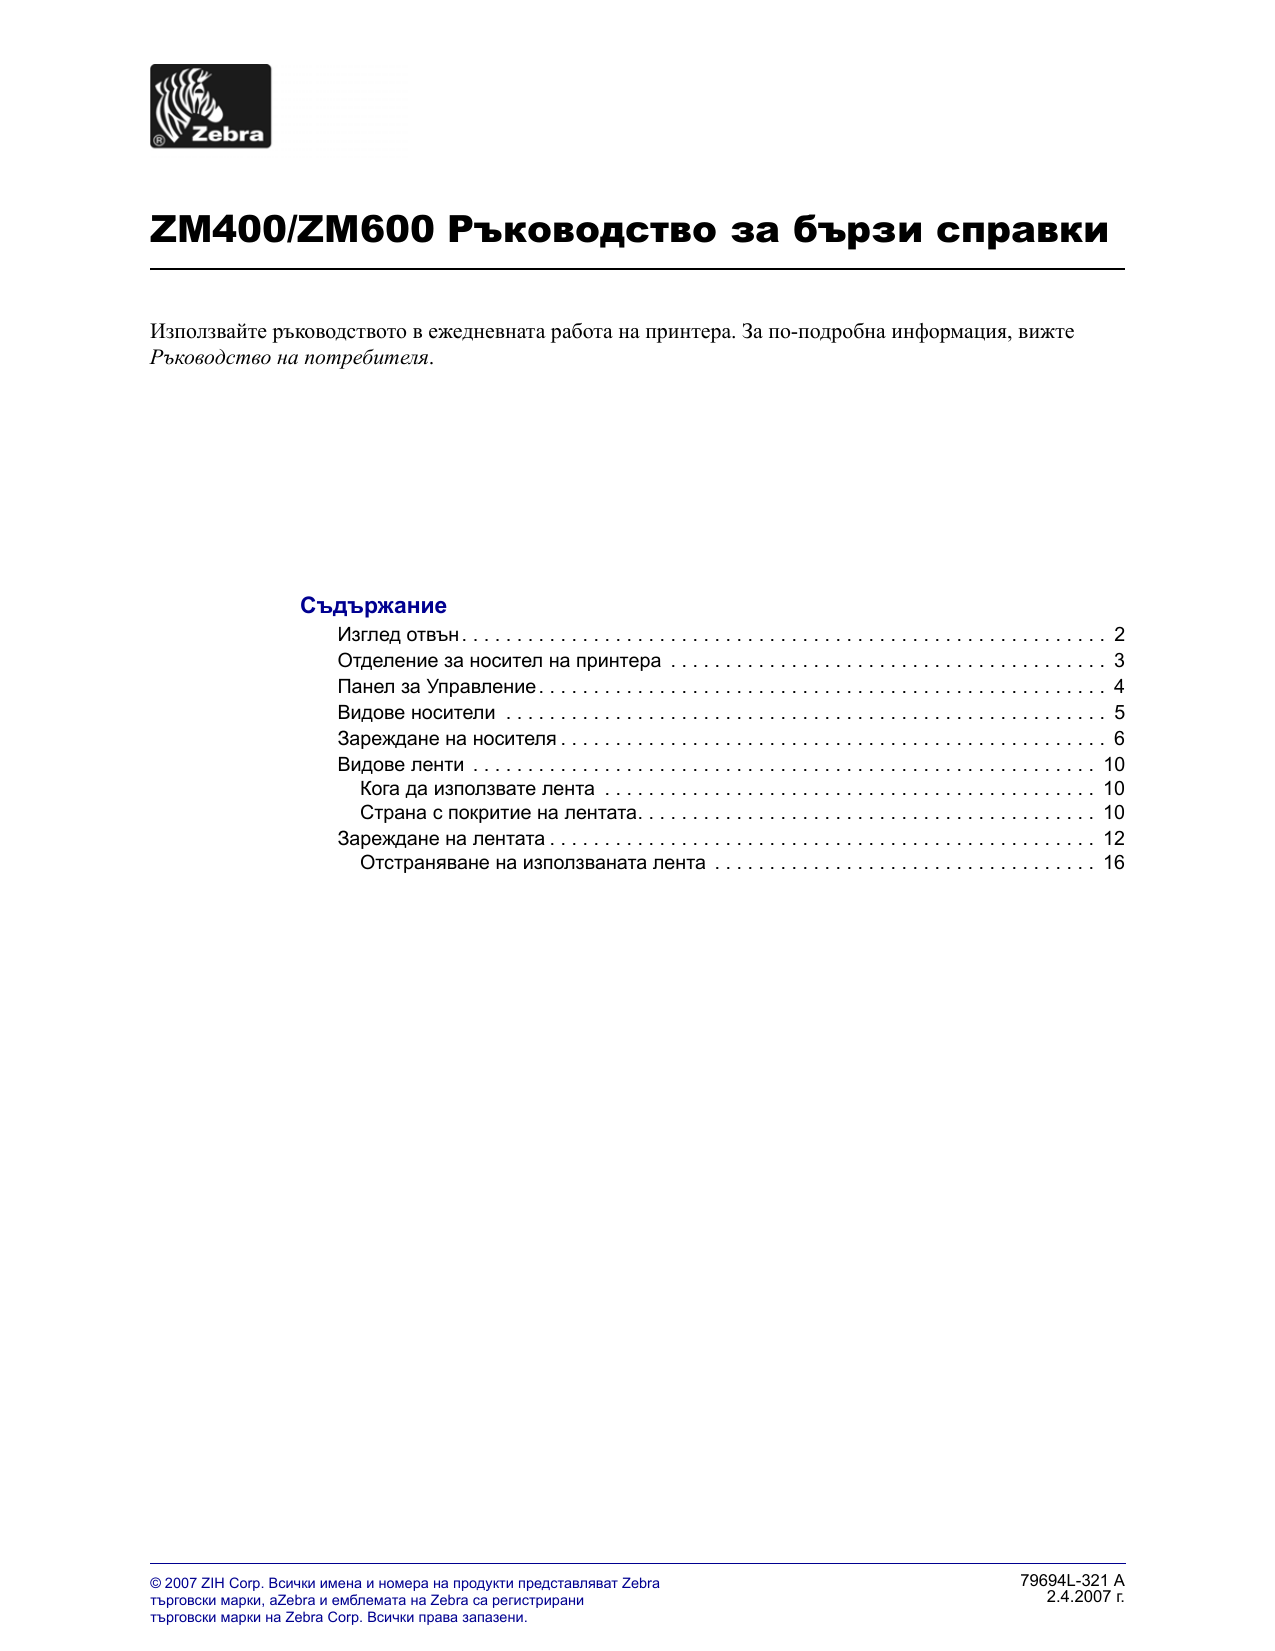 Zebra Zm400zm600 Референтен наръчник Manualzz 0721